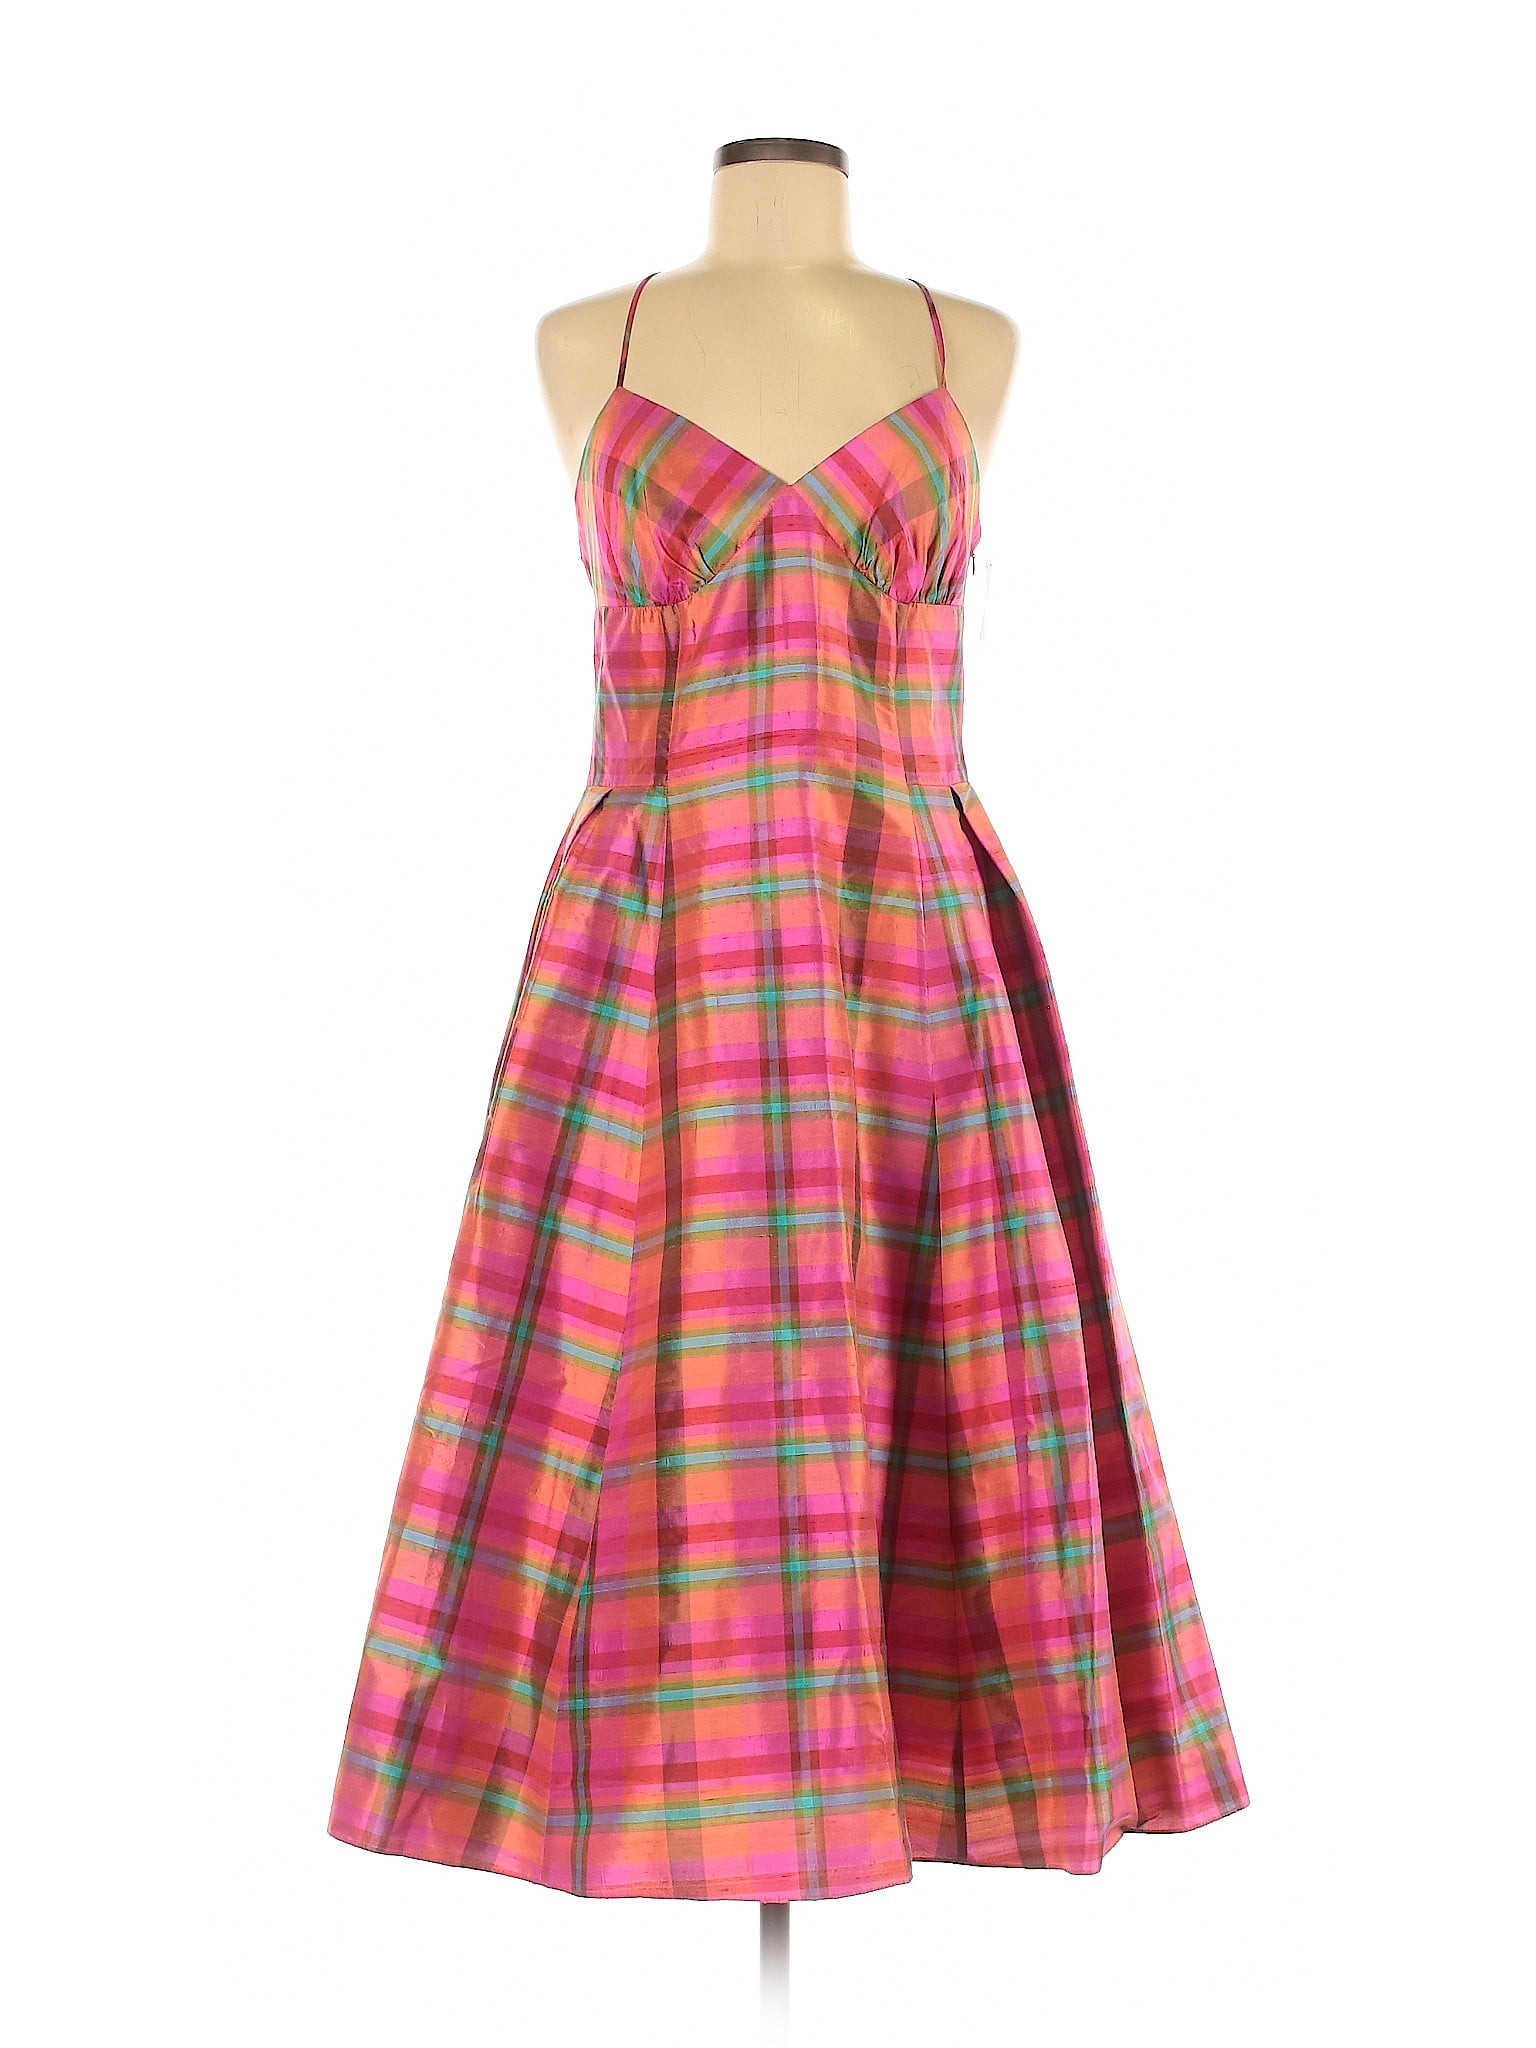 Isaac Mizrahi - Pre-Owned Isaac Mizrahi Women's Size 8 Casual Dress ...